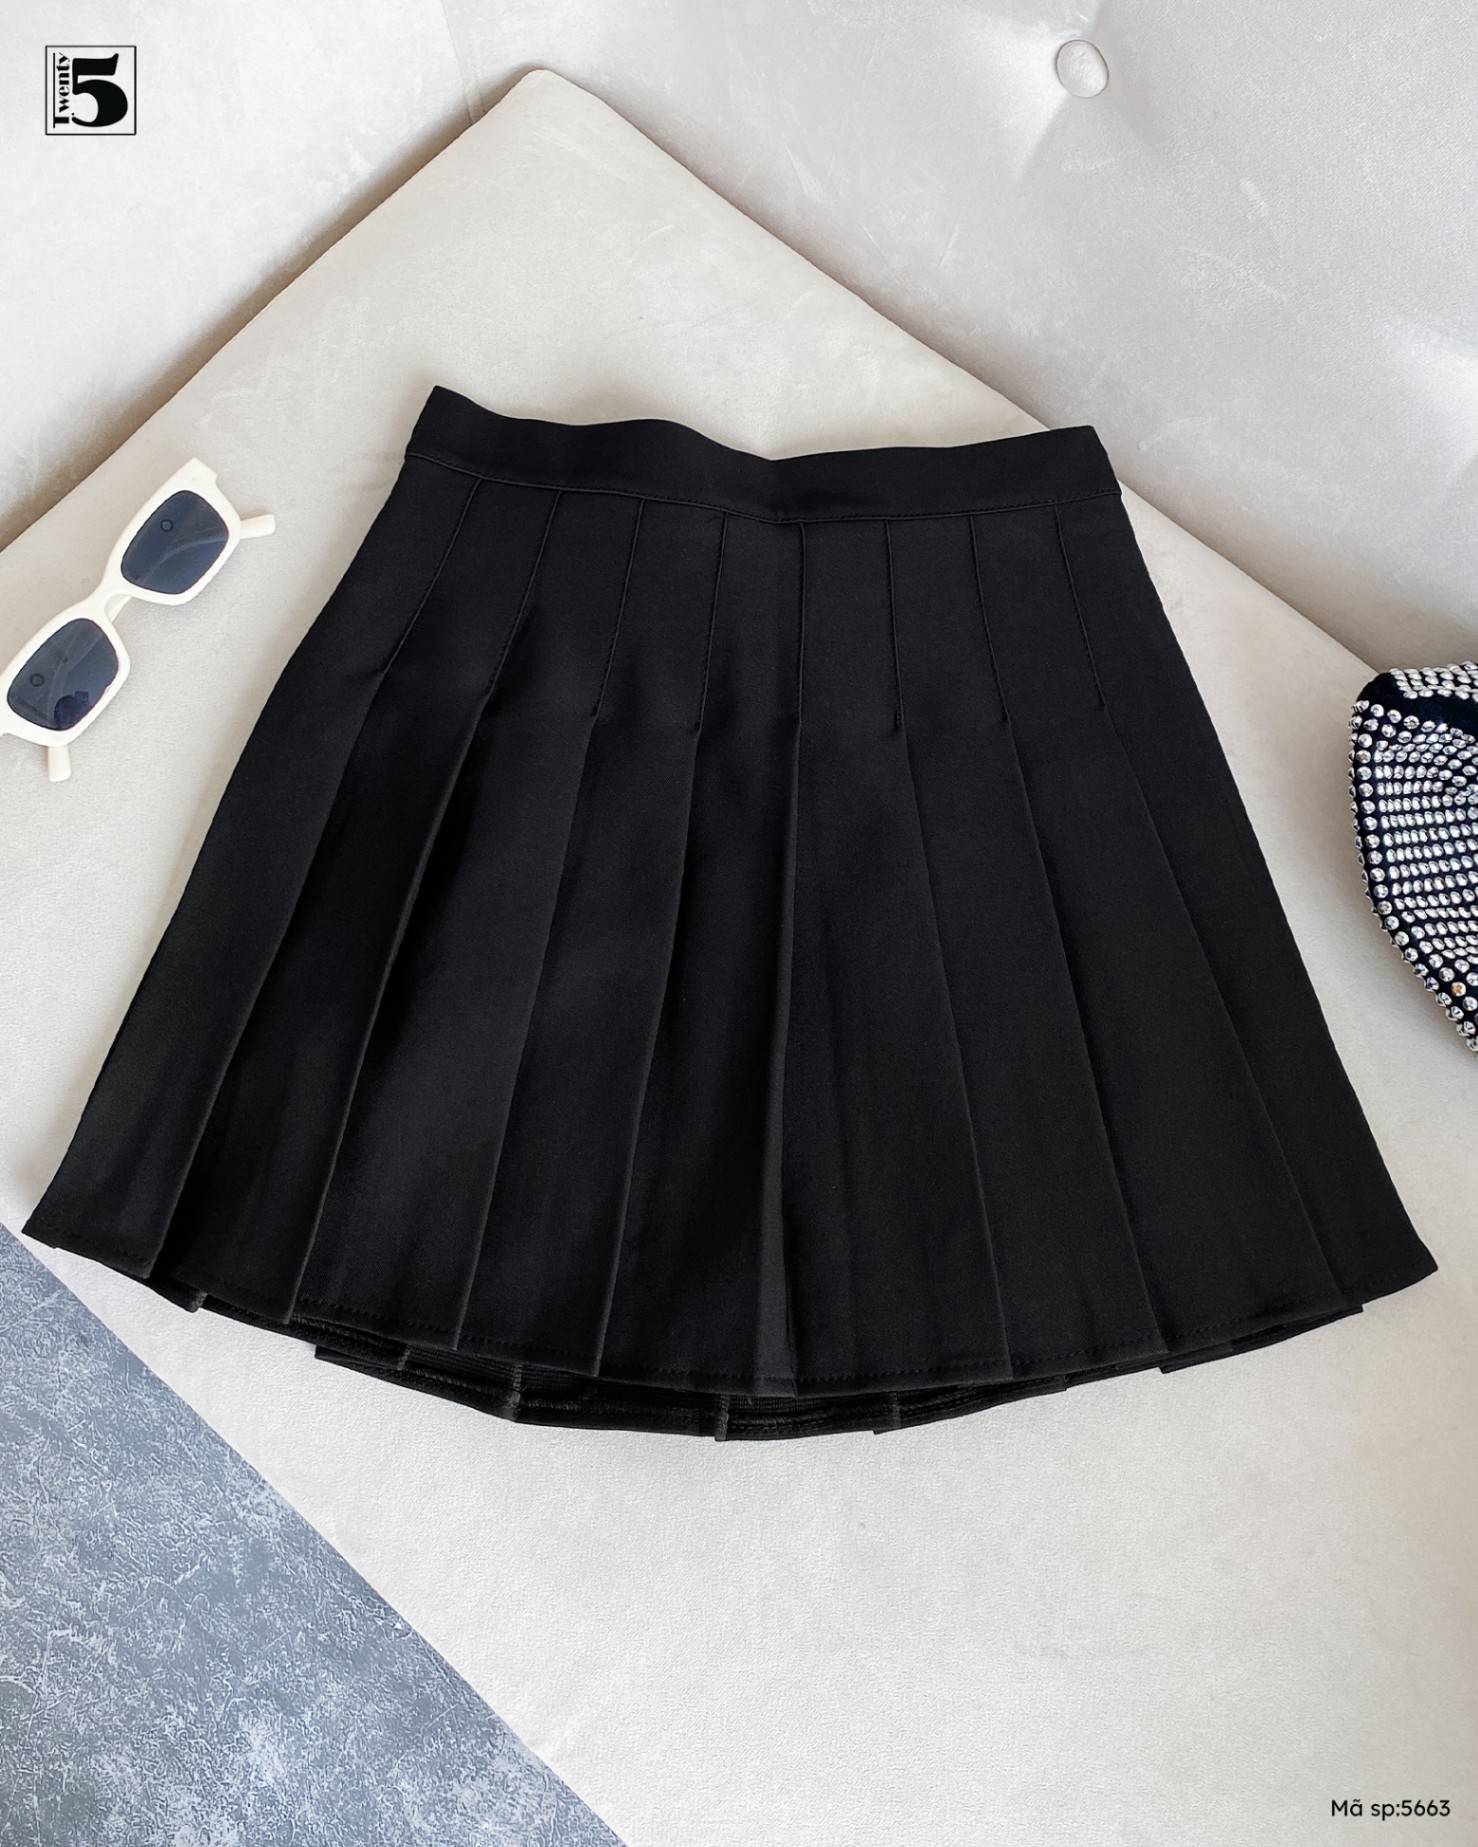 Chân váy tennis xếp ly to 3 màu trendy đen trắng xám thời trang banamo